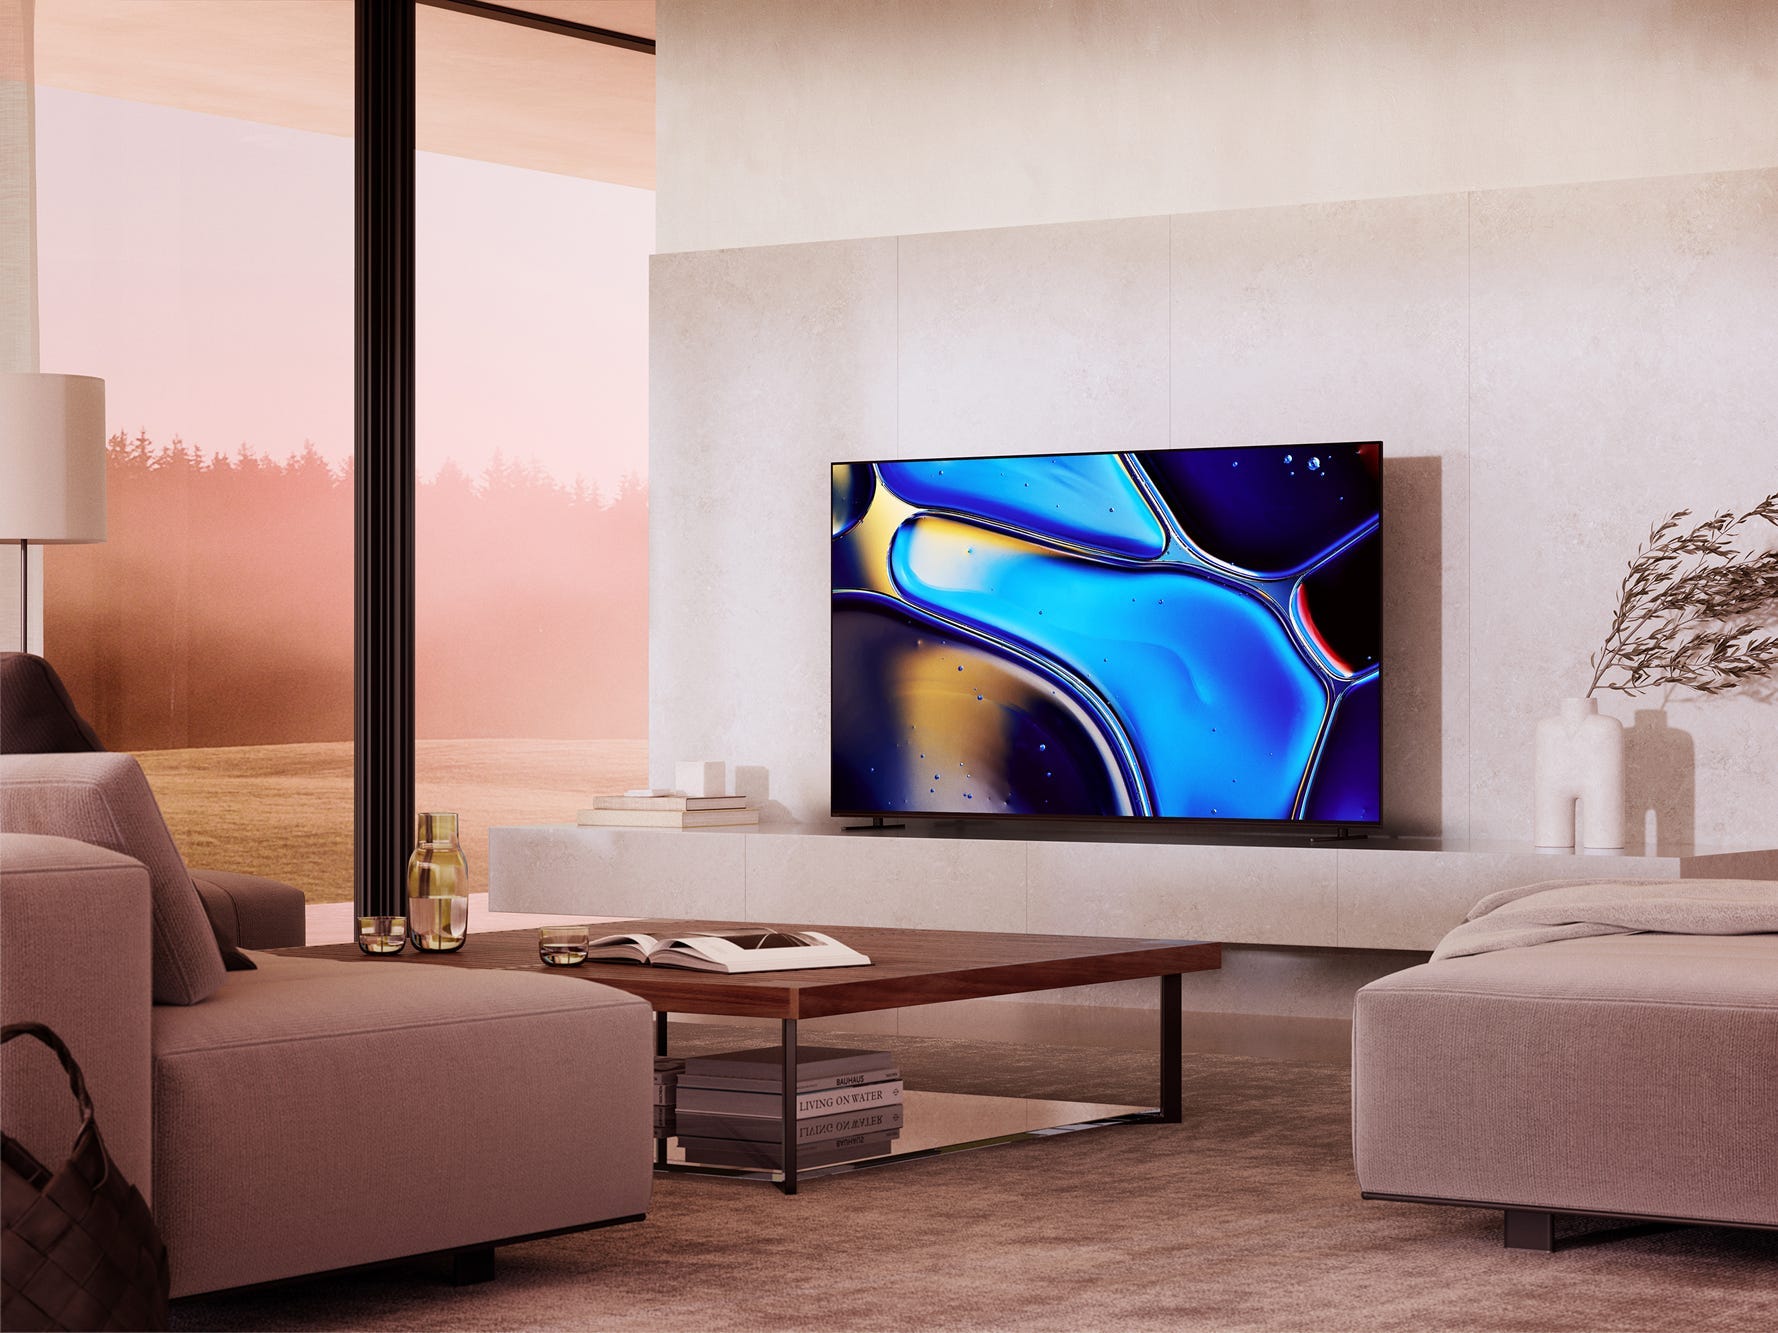 Ein Bravia 8 OLED-Fernseher auf einer Unterhaltungskonsole in einem Wohnzimmer.